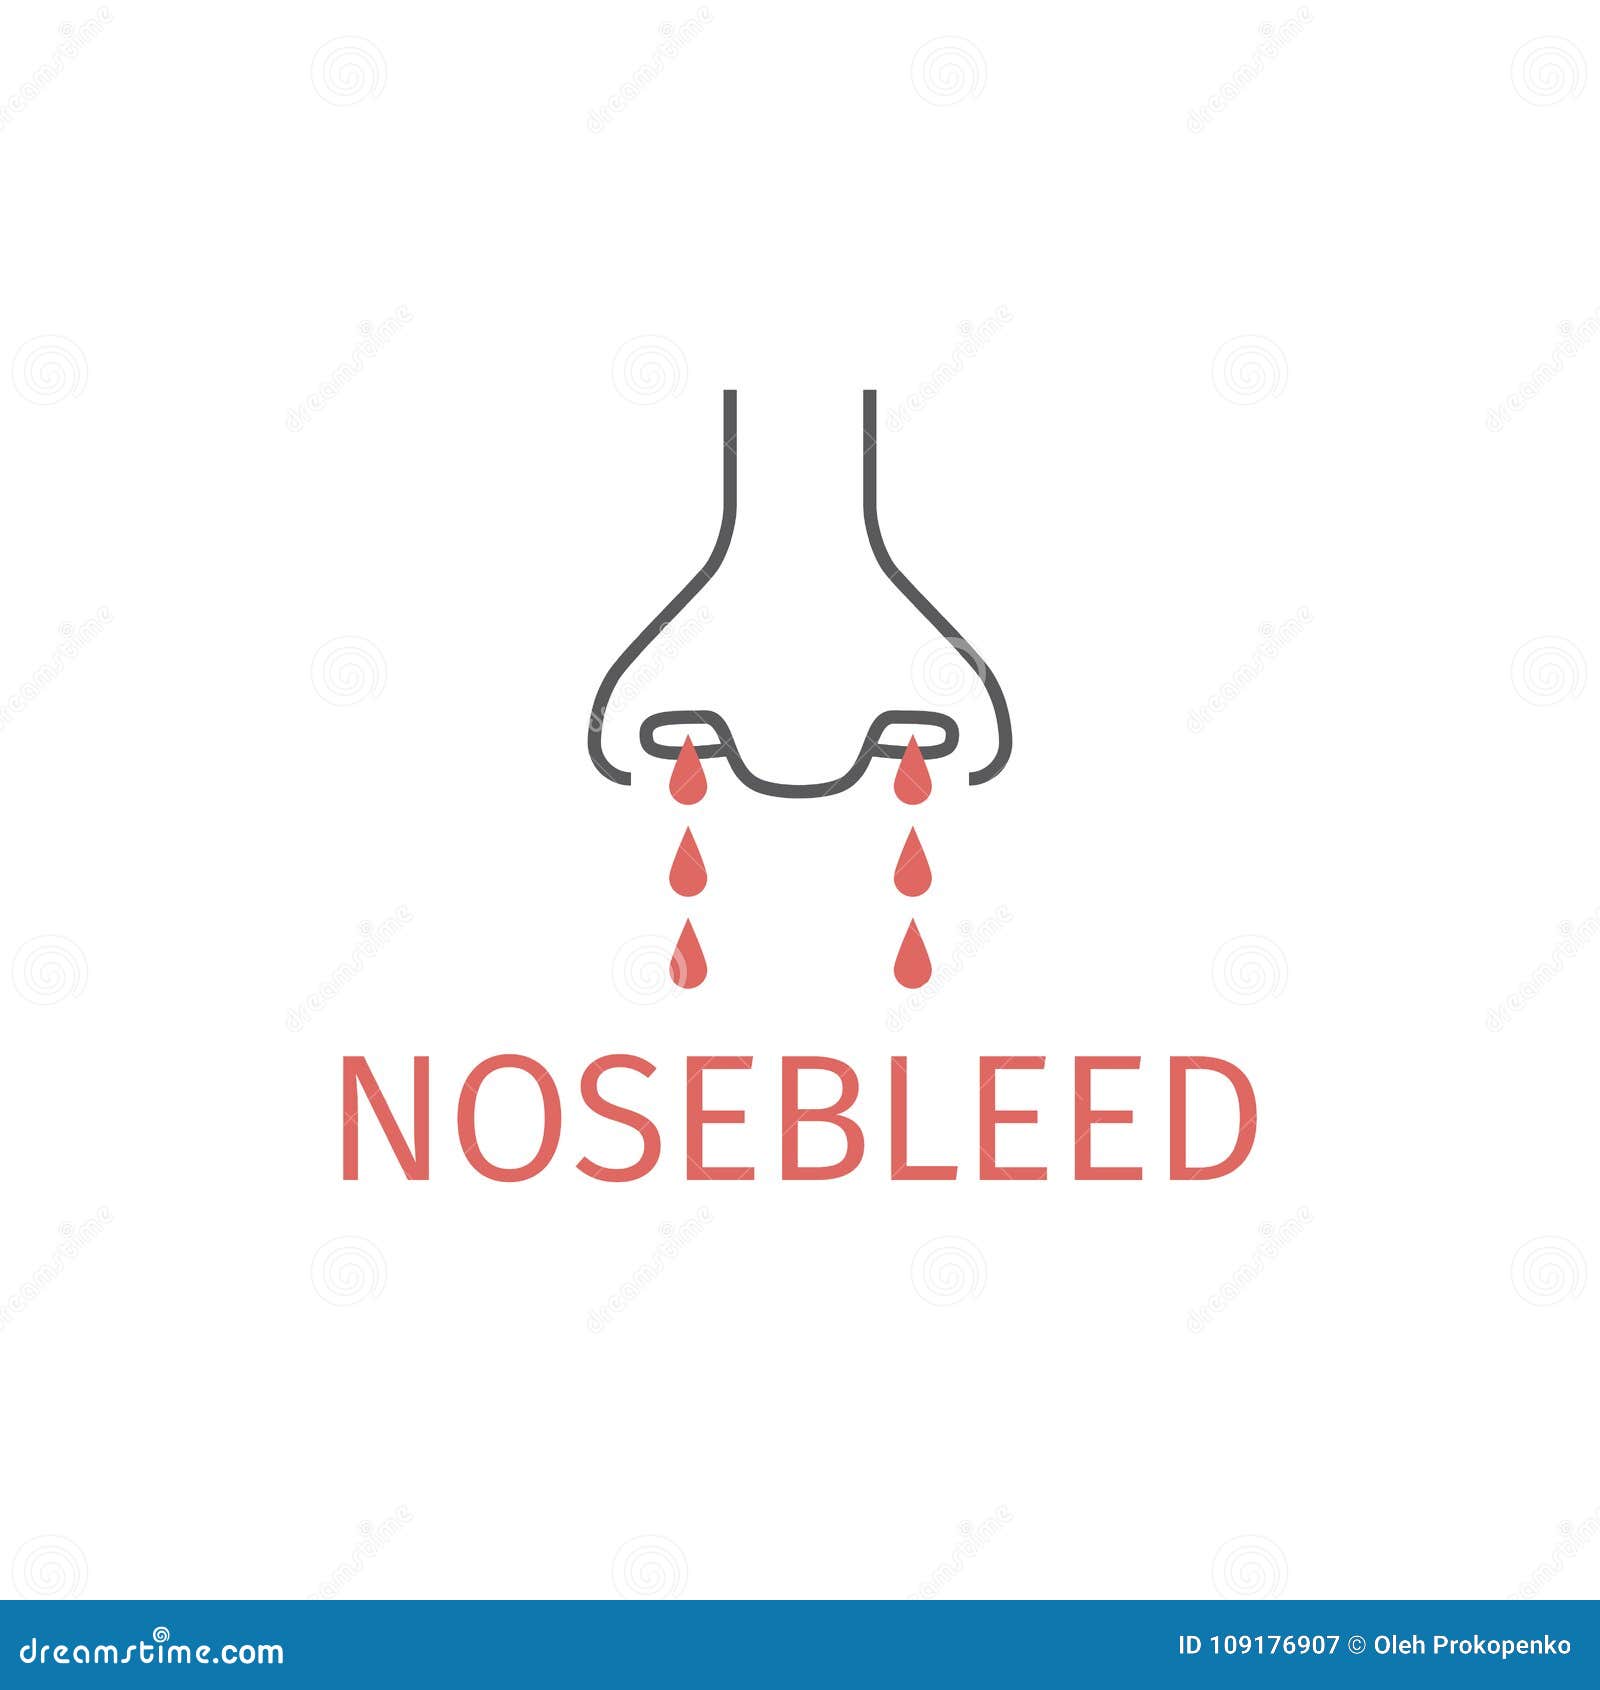 nosebleed line icon